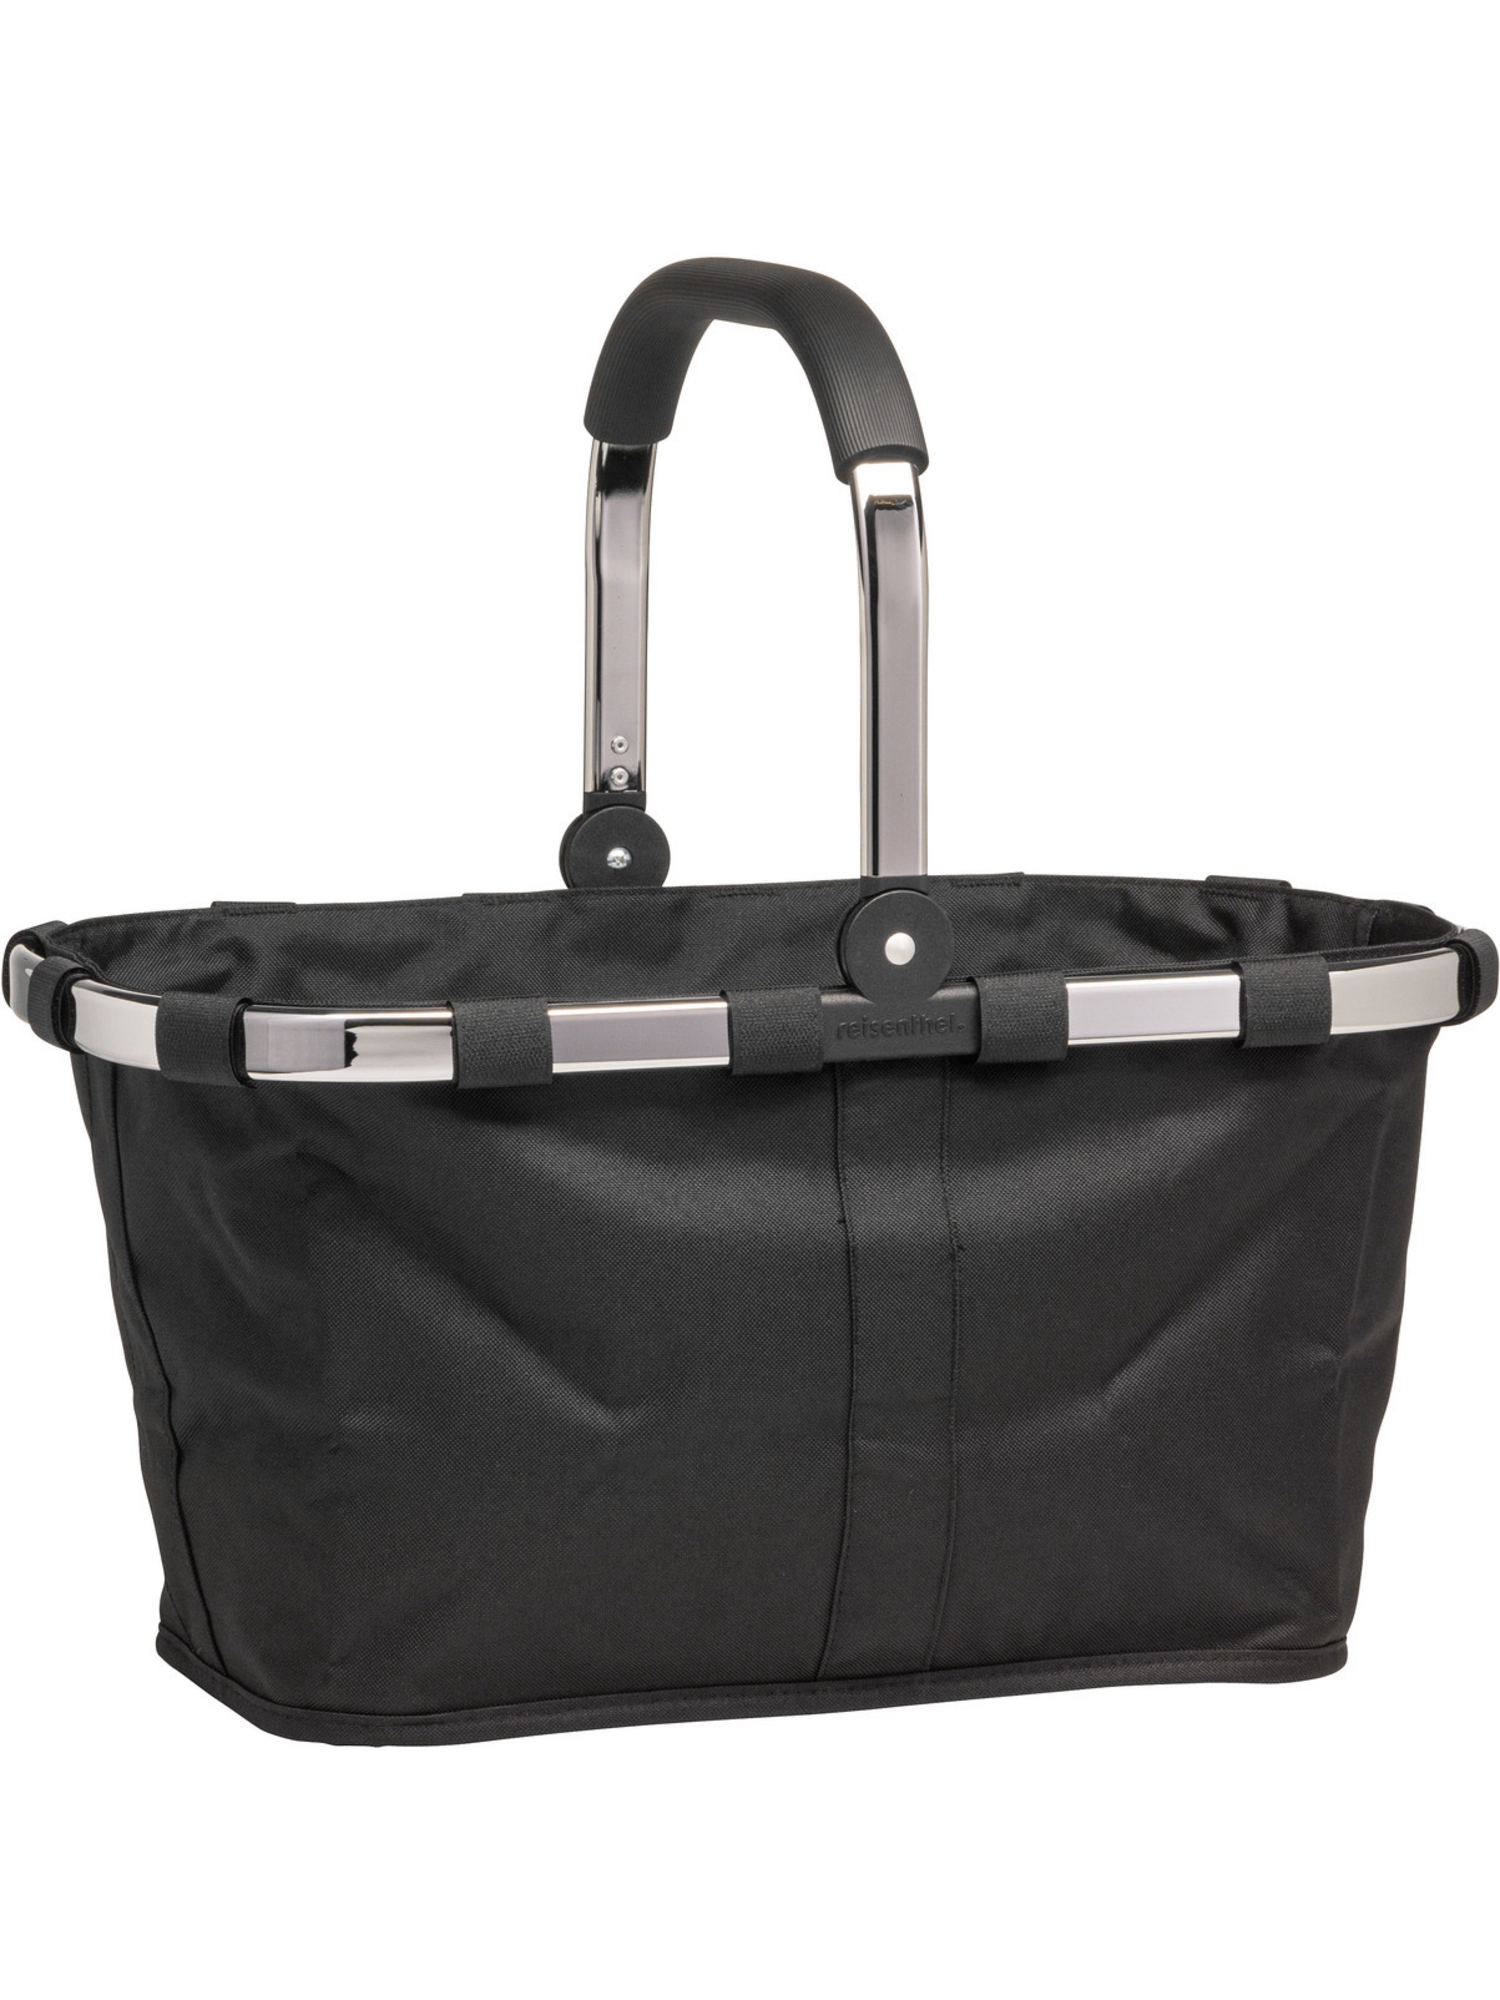 Сумка шоппер Reisenthel Einkaufstasche carrybag frame chrome, платиновый/черный платиновый вензель